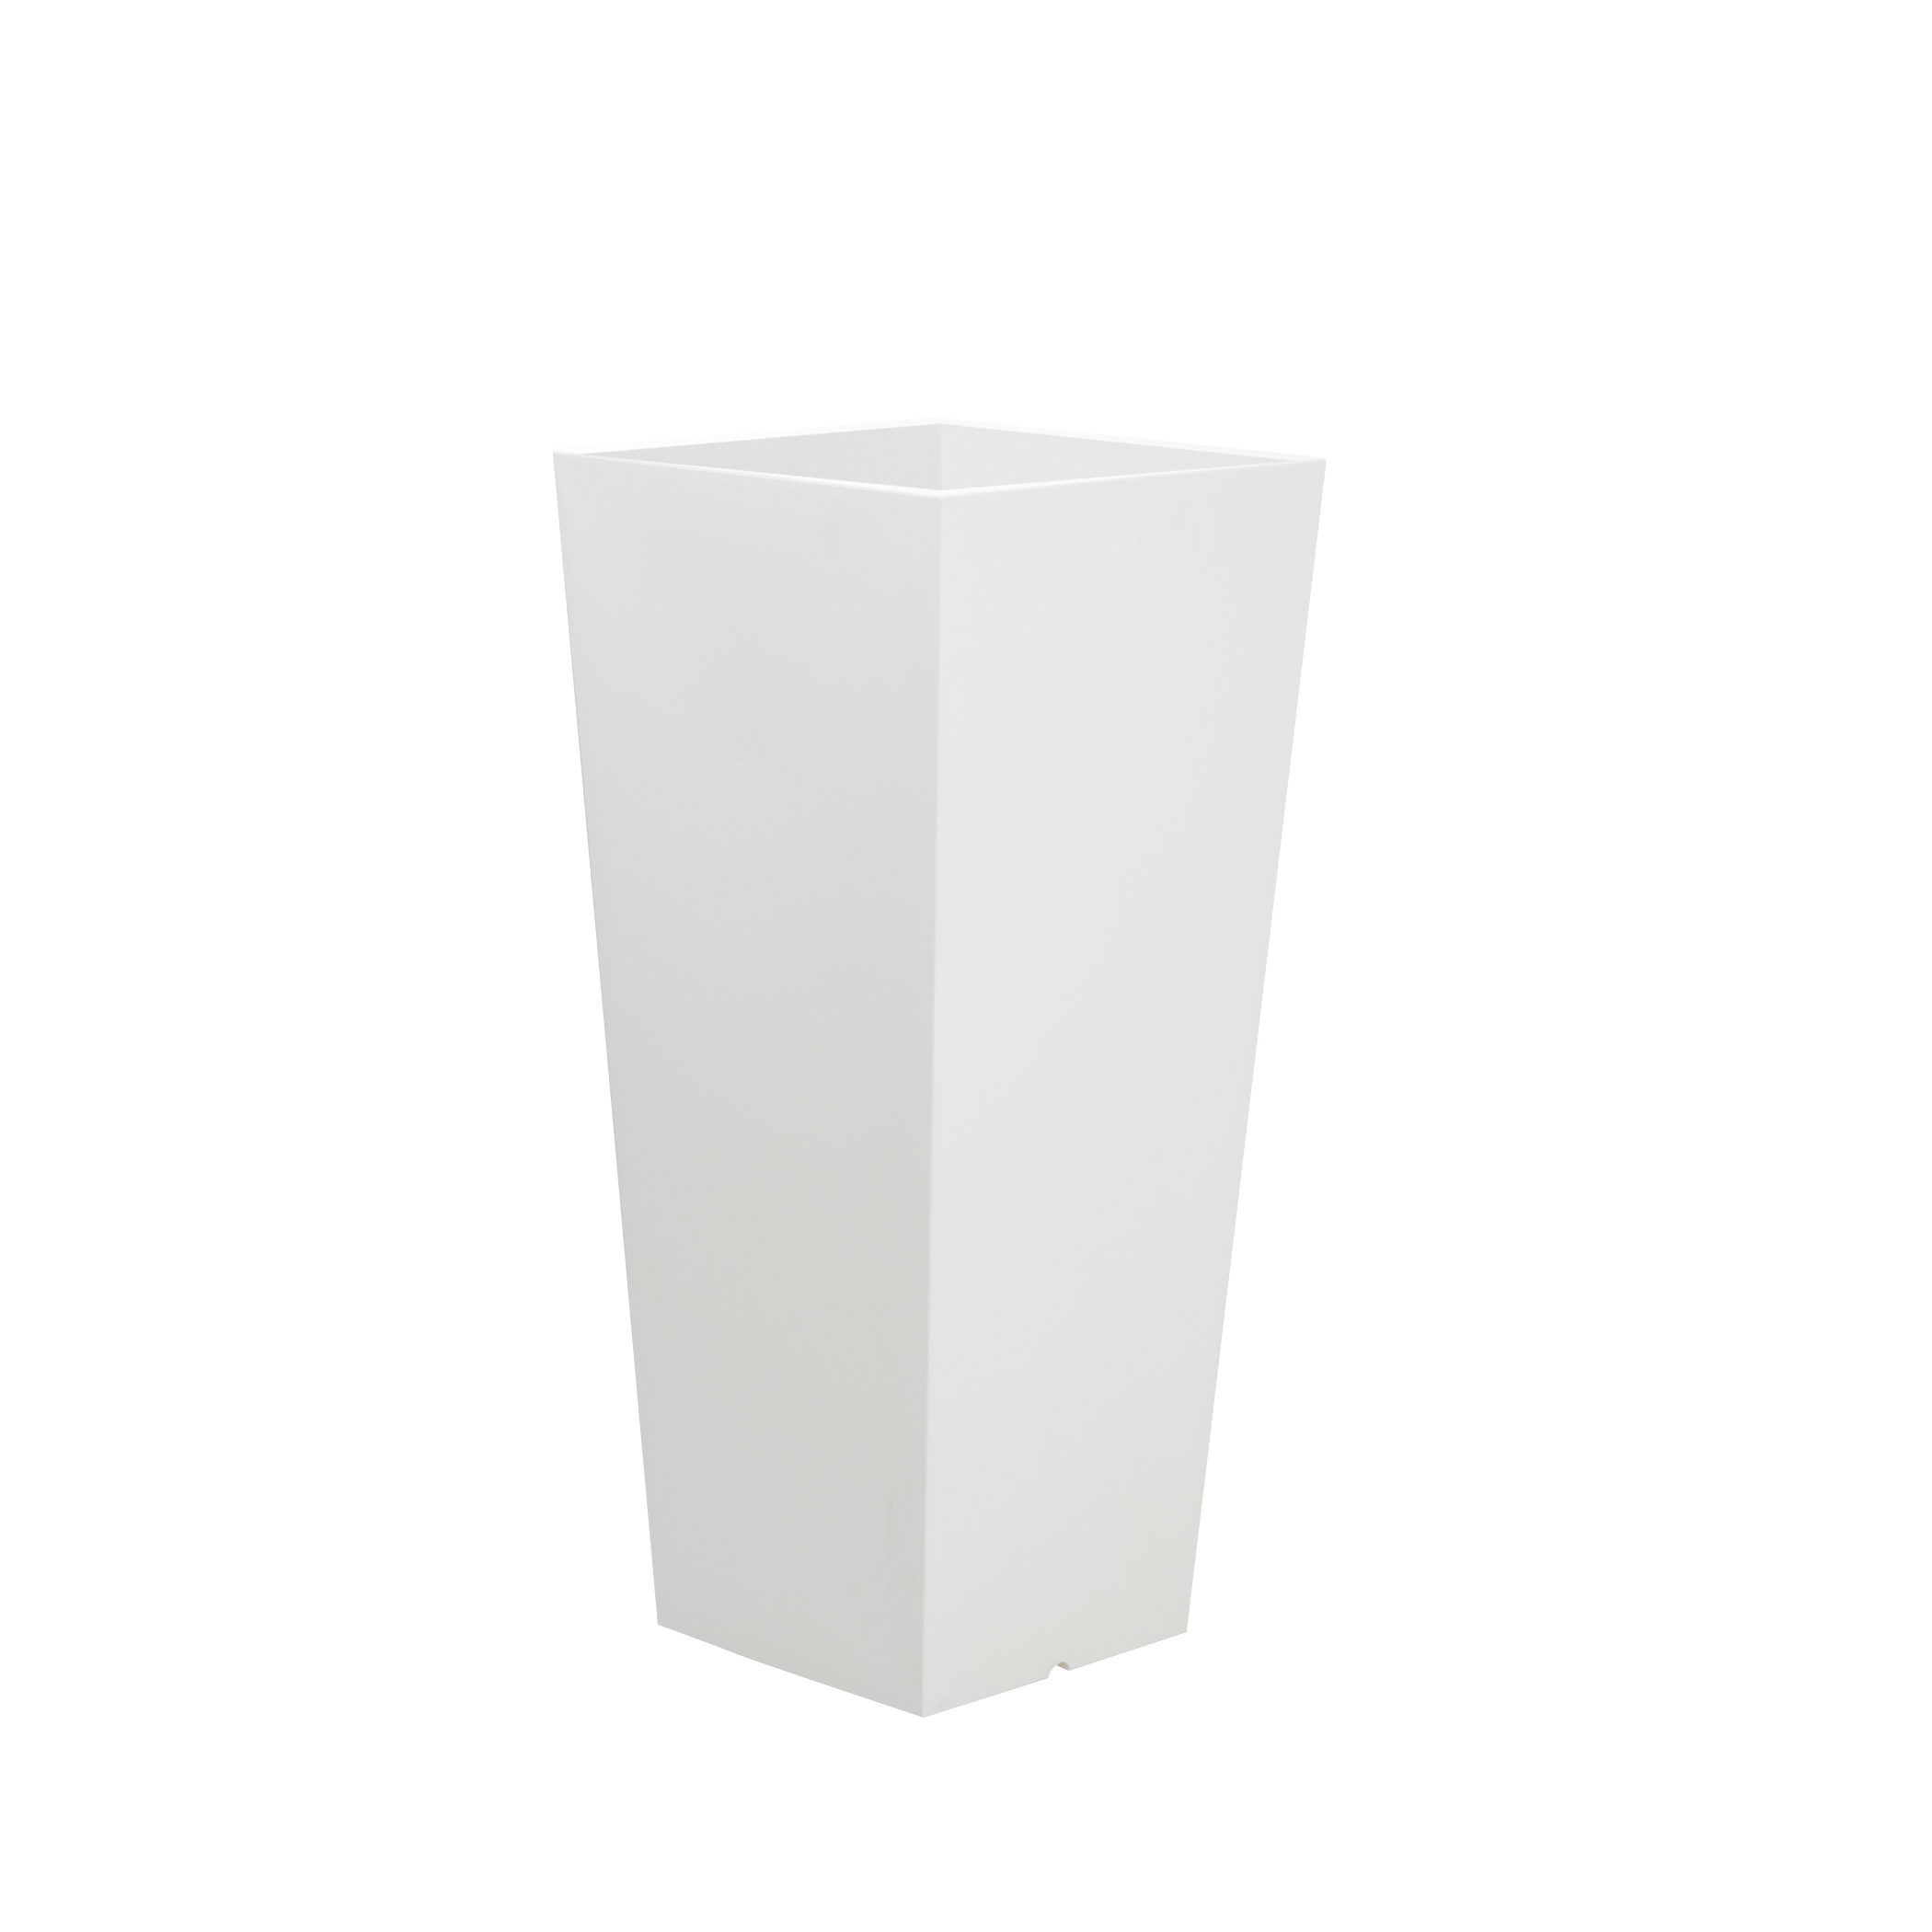 Maceta de polietileno de alta densidad newgarden blanco 26x58 cm